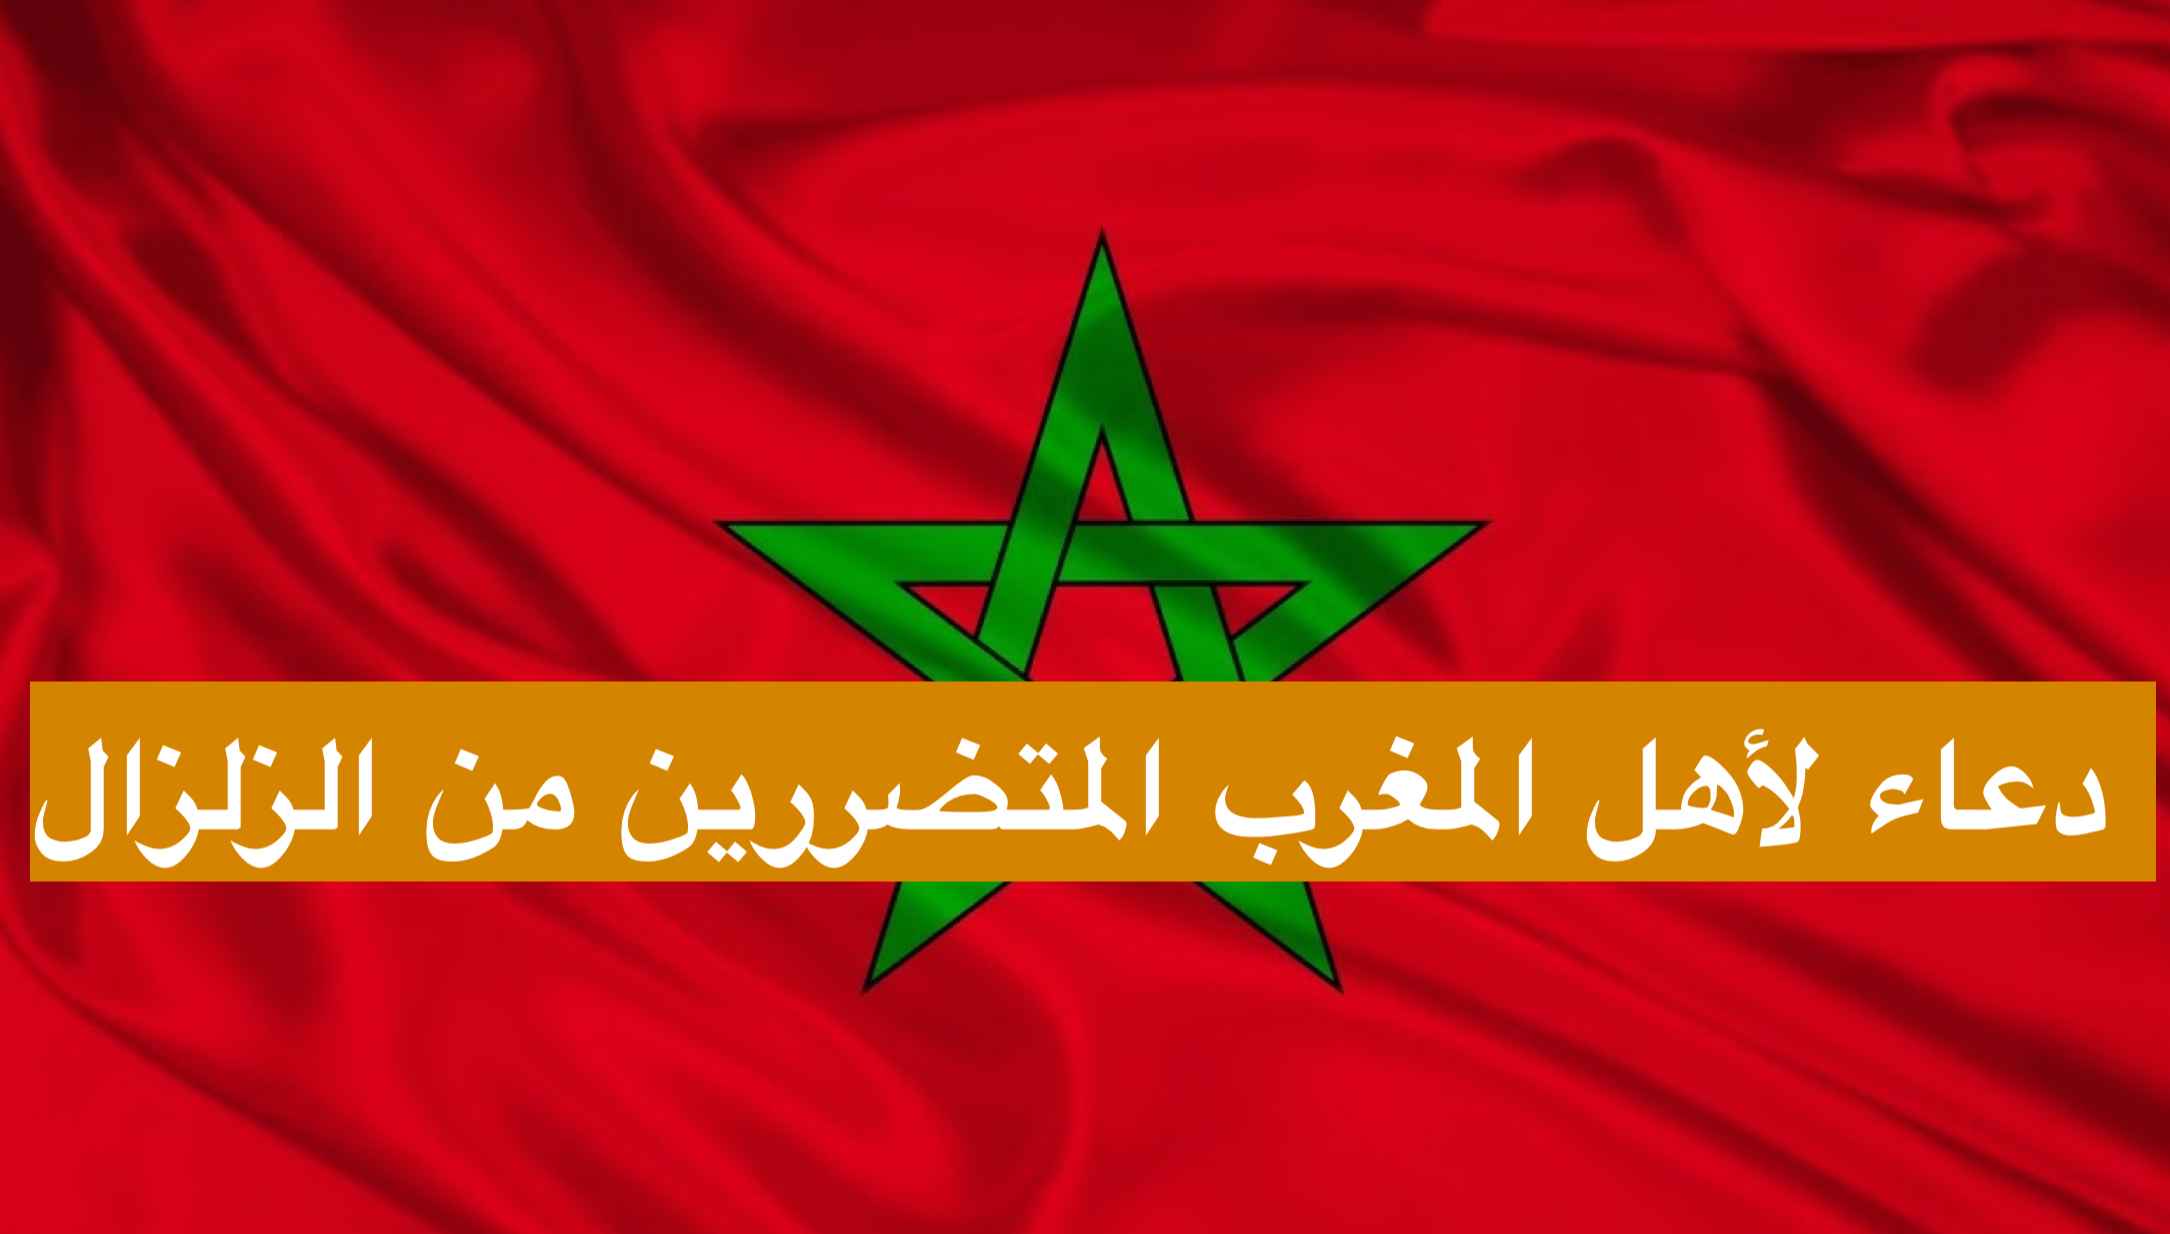 اللهم احفظ المغرب واهلها دعاء لأهل المغرب المتضررين من الزلزال